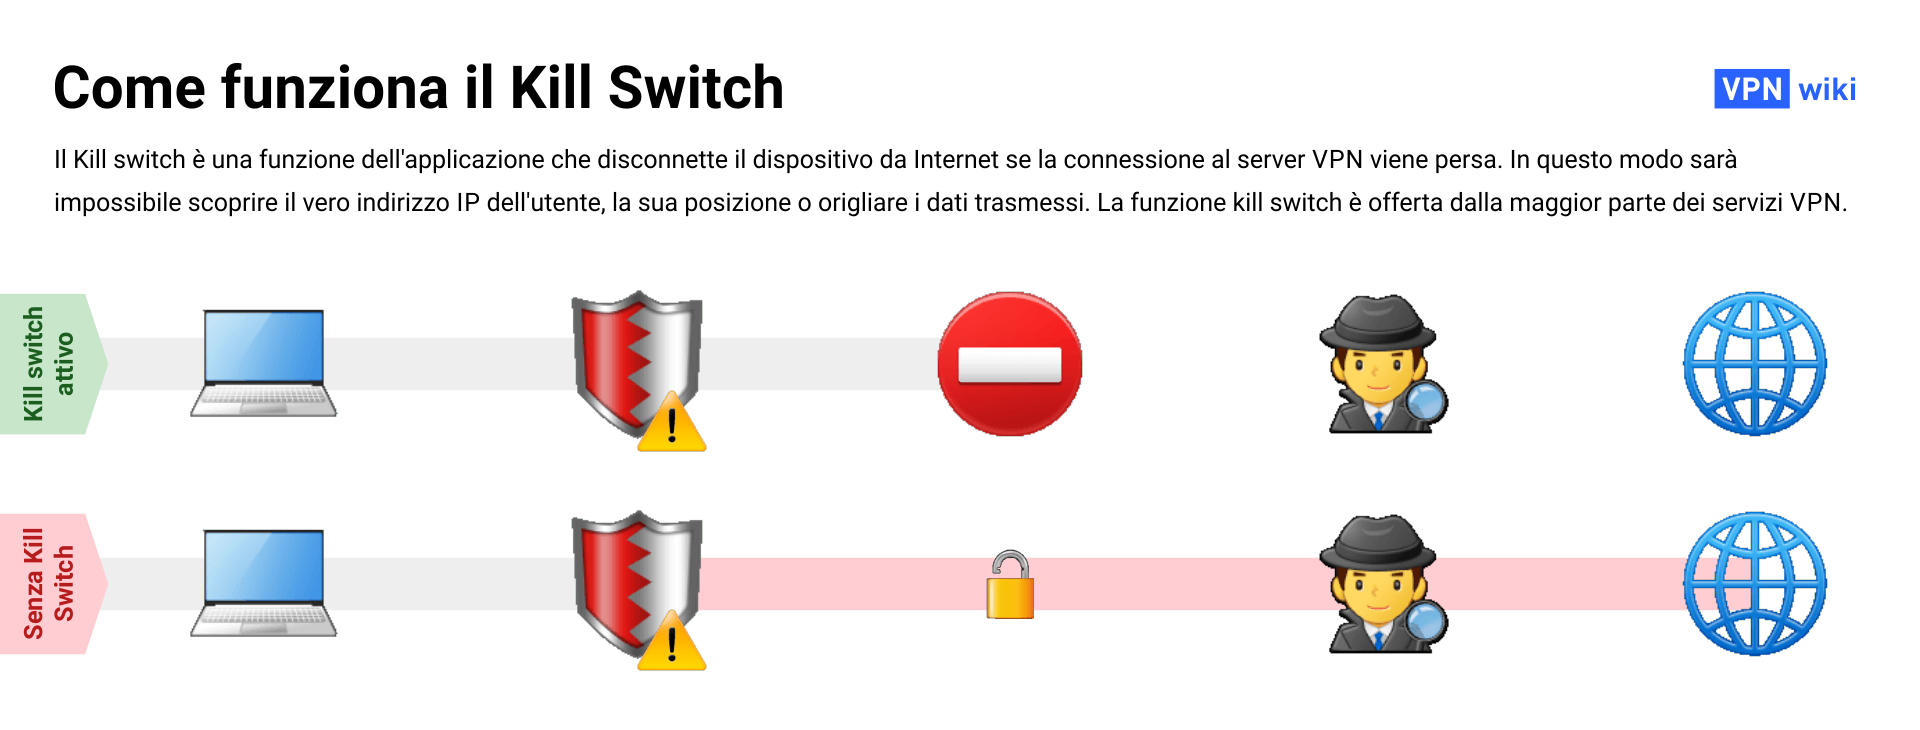 Che cos’e un kill switch VPN e come funziona?